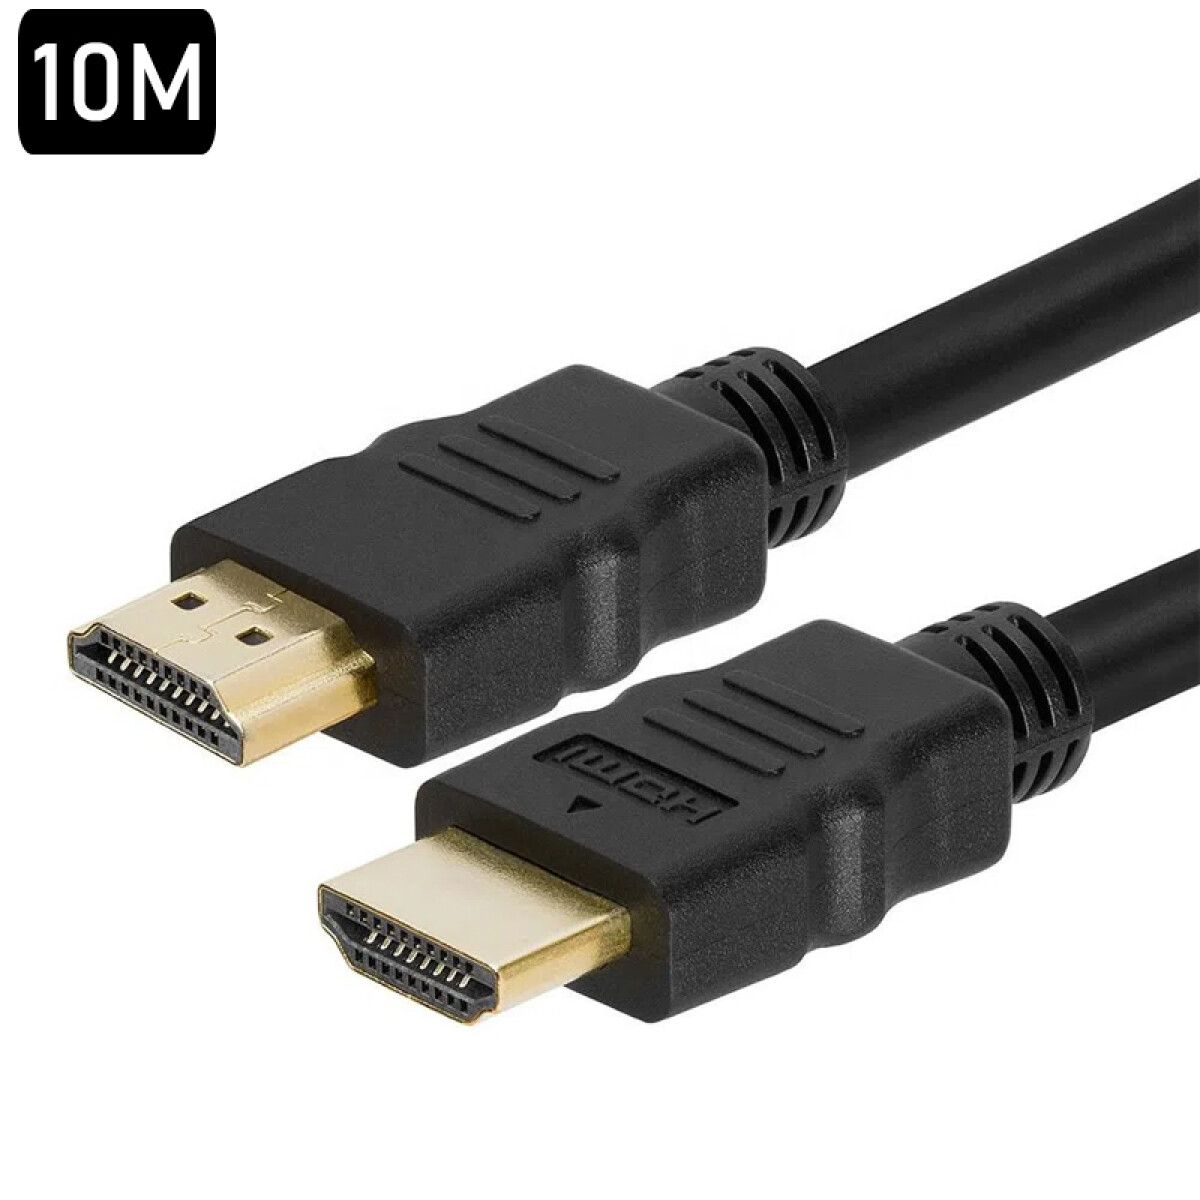 Cable HDMI 10M 4K - Unica 